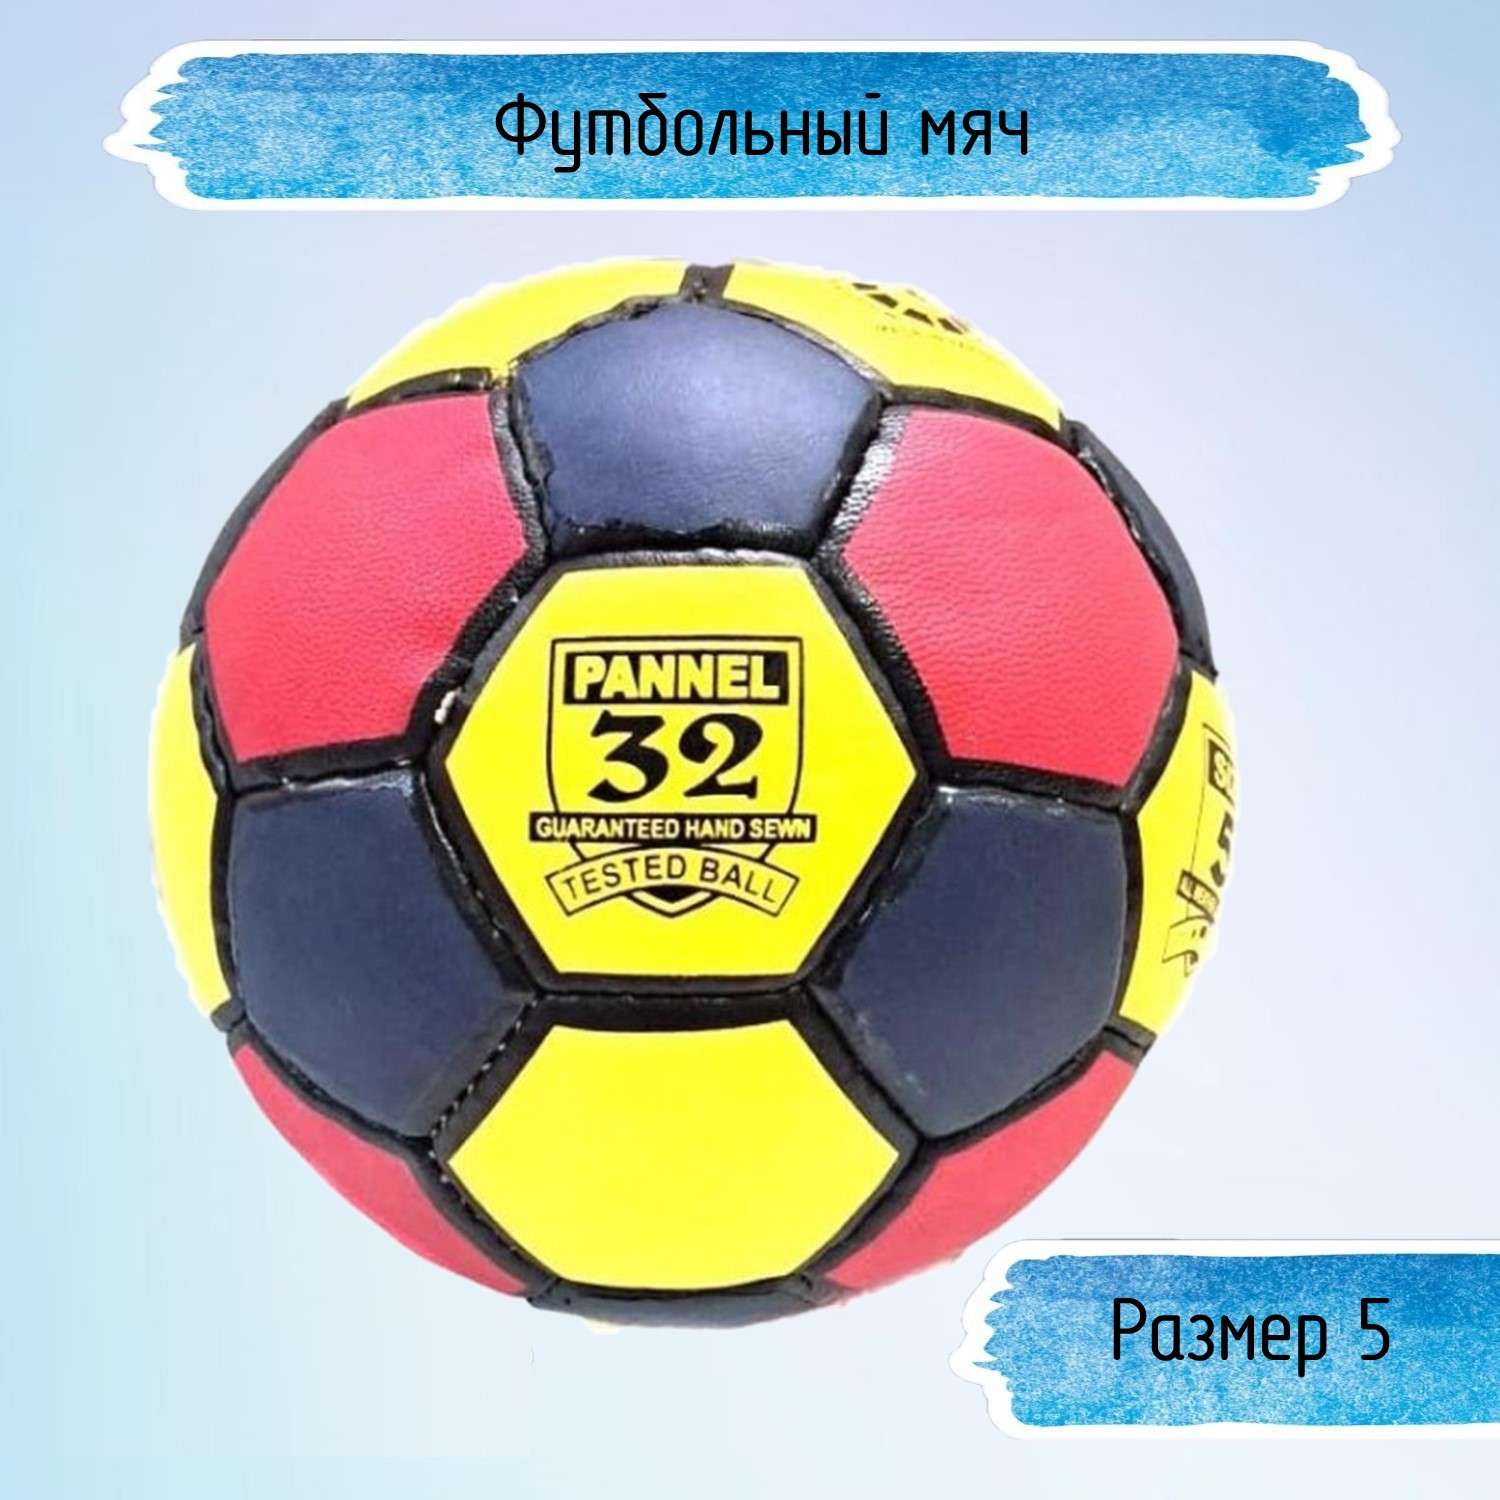 Разноцветный футбольный мяч Uniglodis 32 панели размер 5 - фото 1